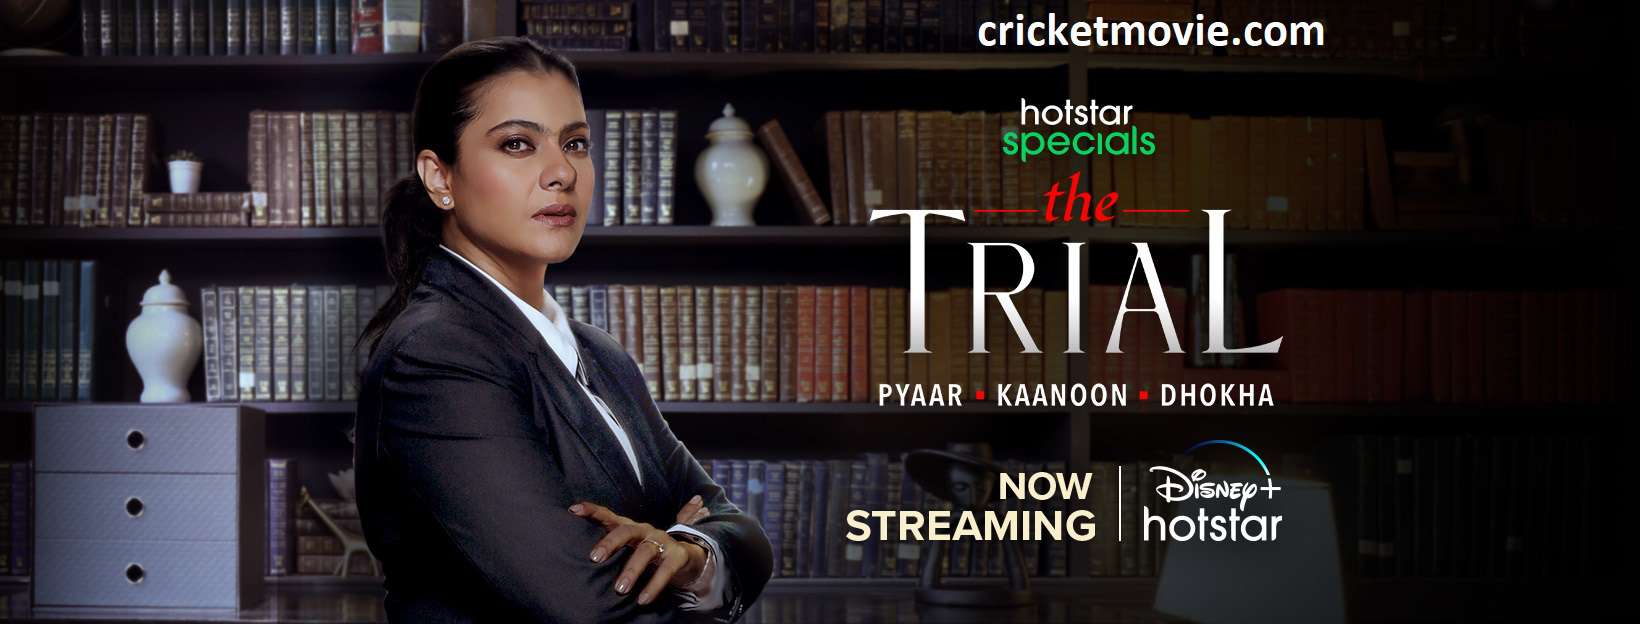 The Trial Review-cricketmovie.com